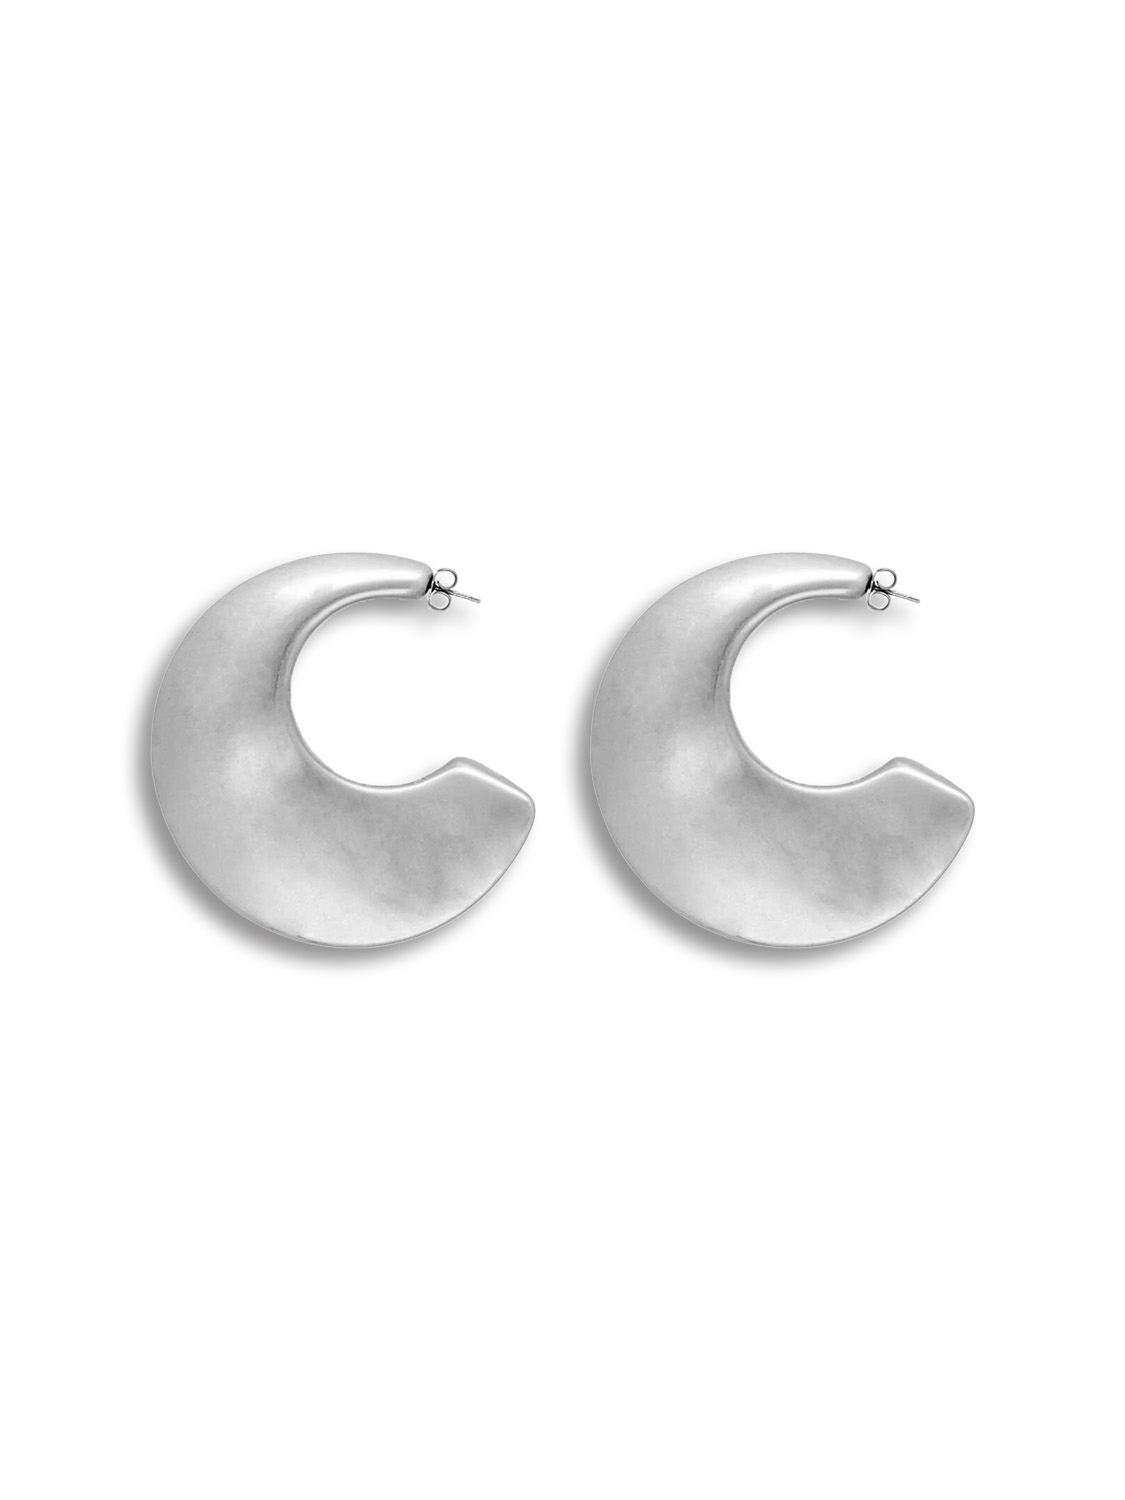 Big Moon Earring - ear studs in creole shape